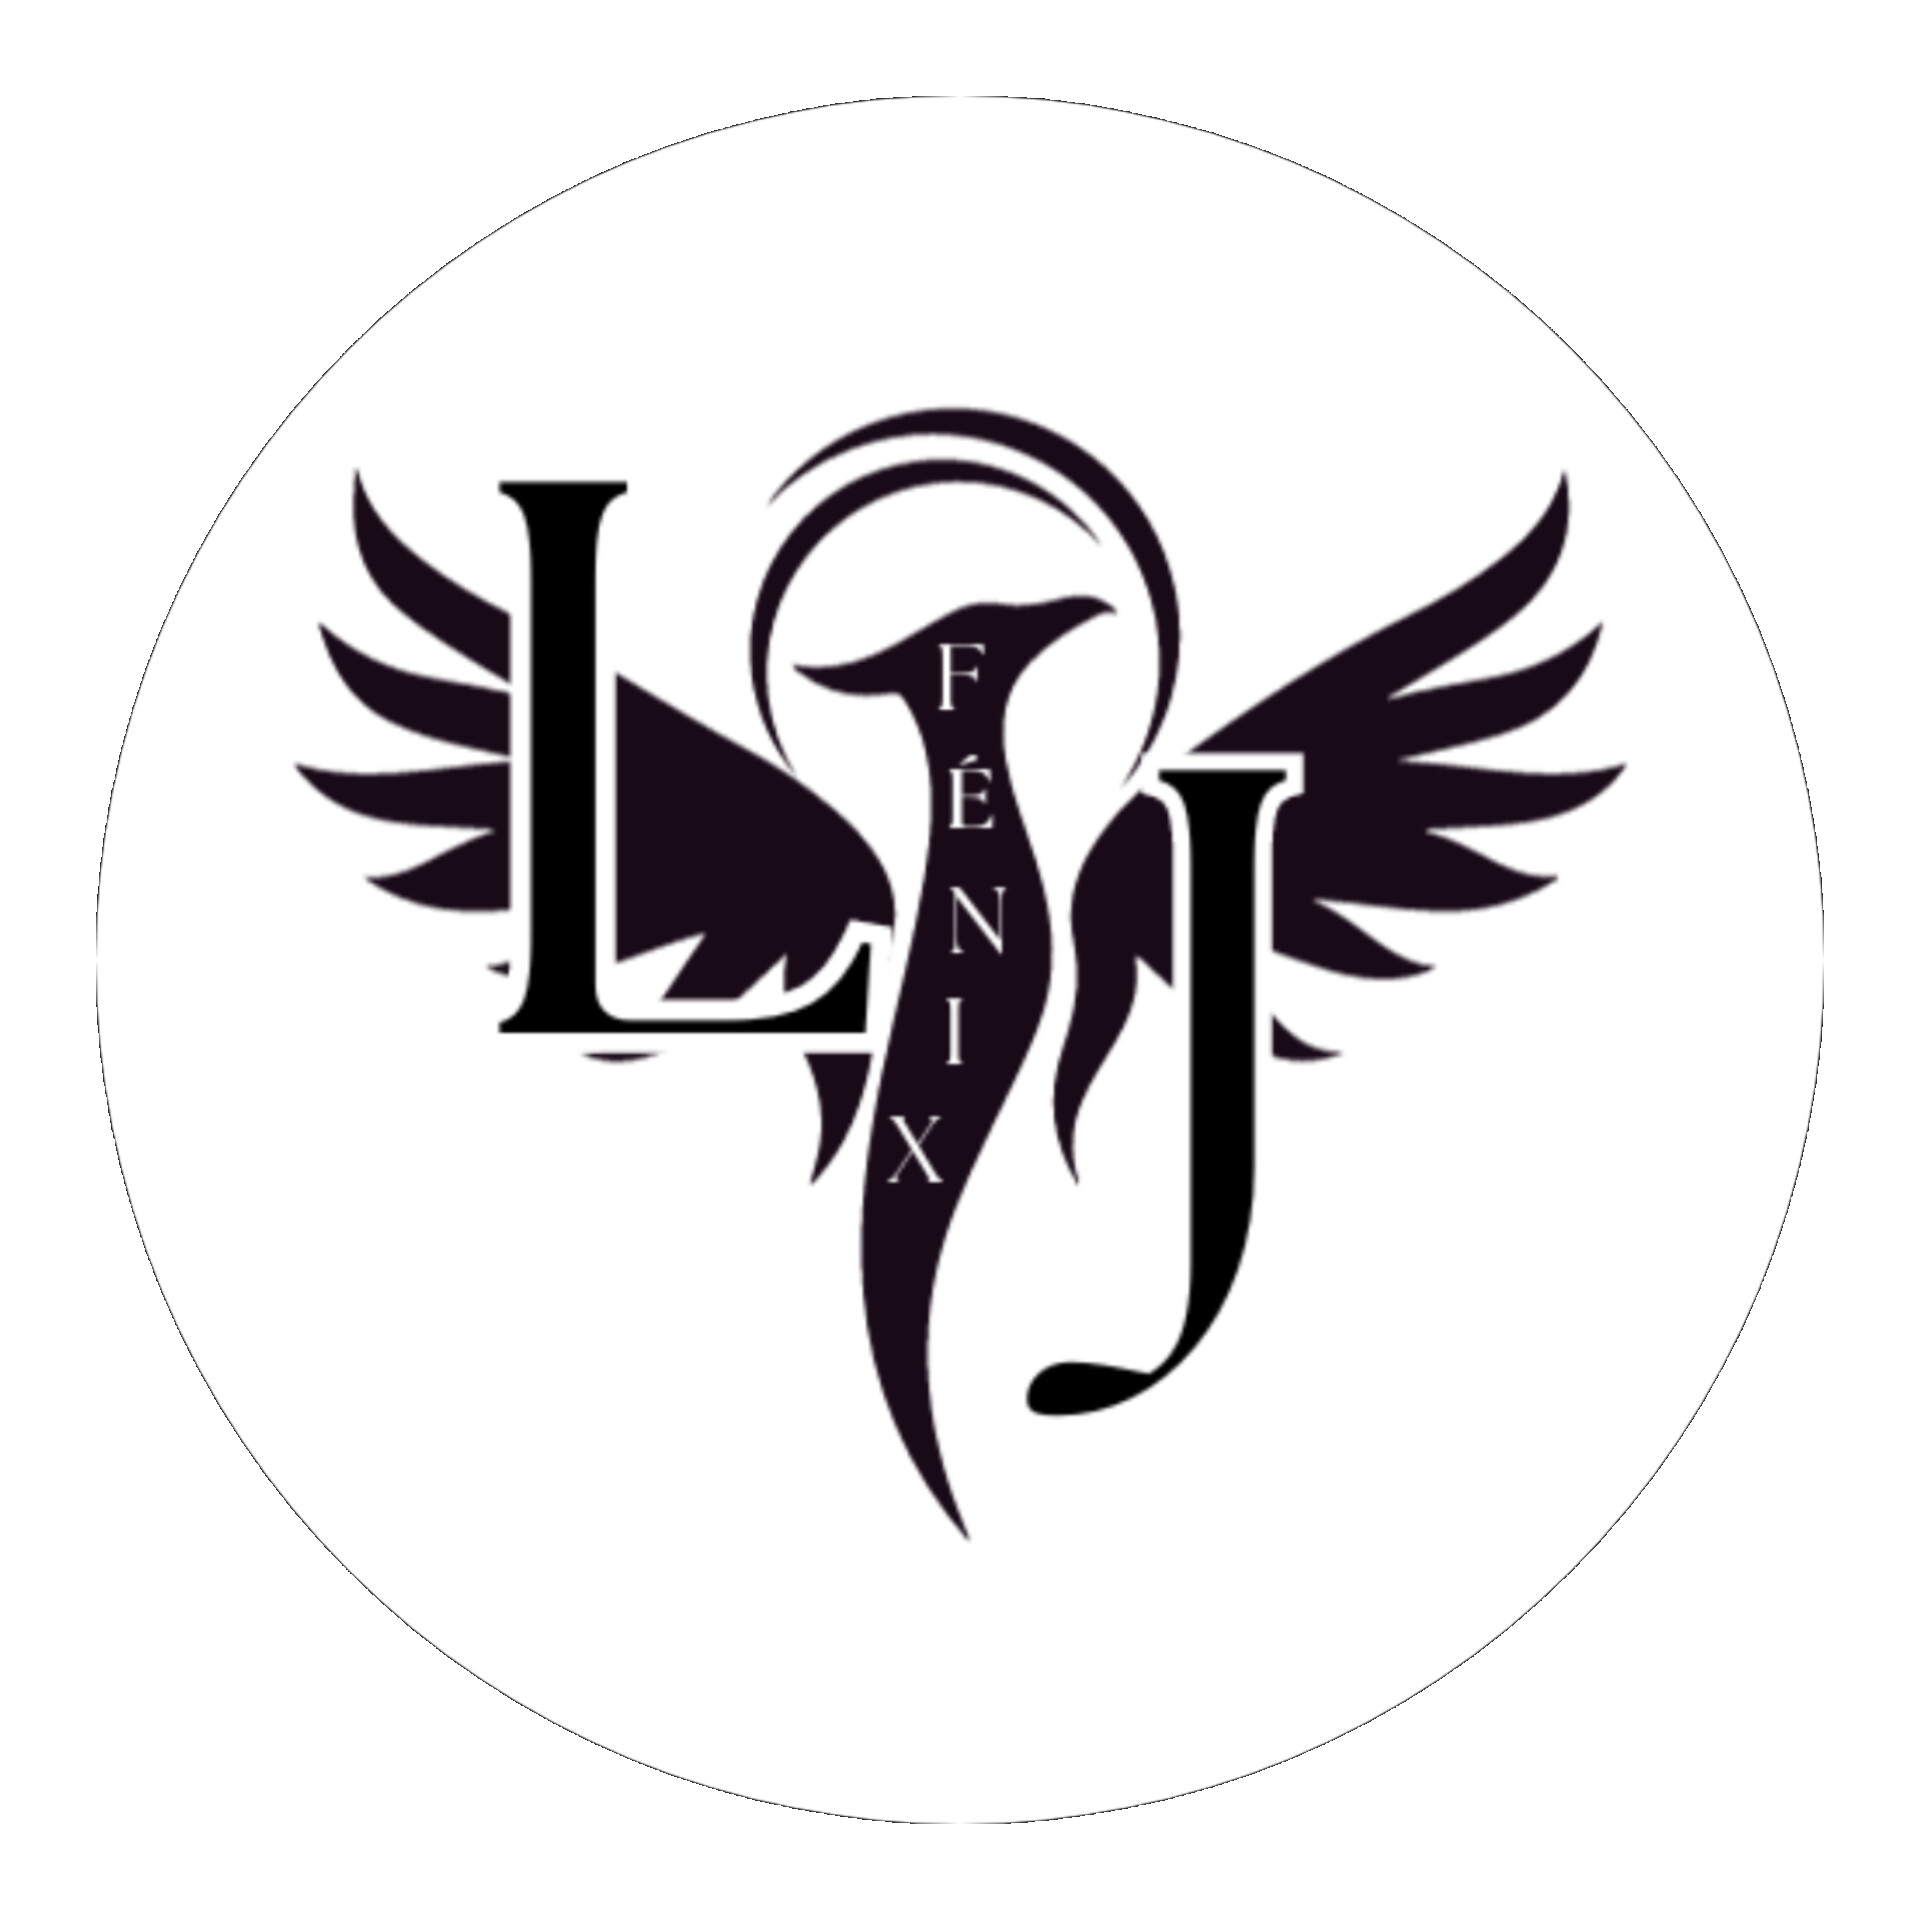 lj fenix logo blanco-1.png